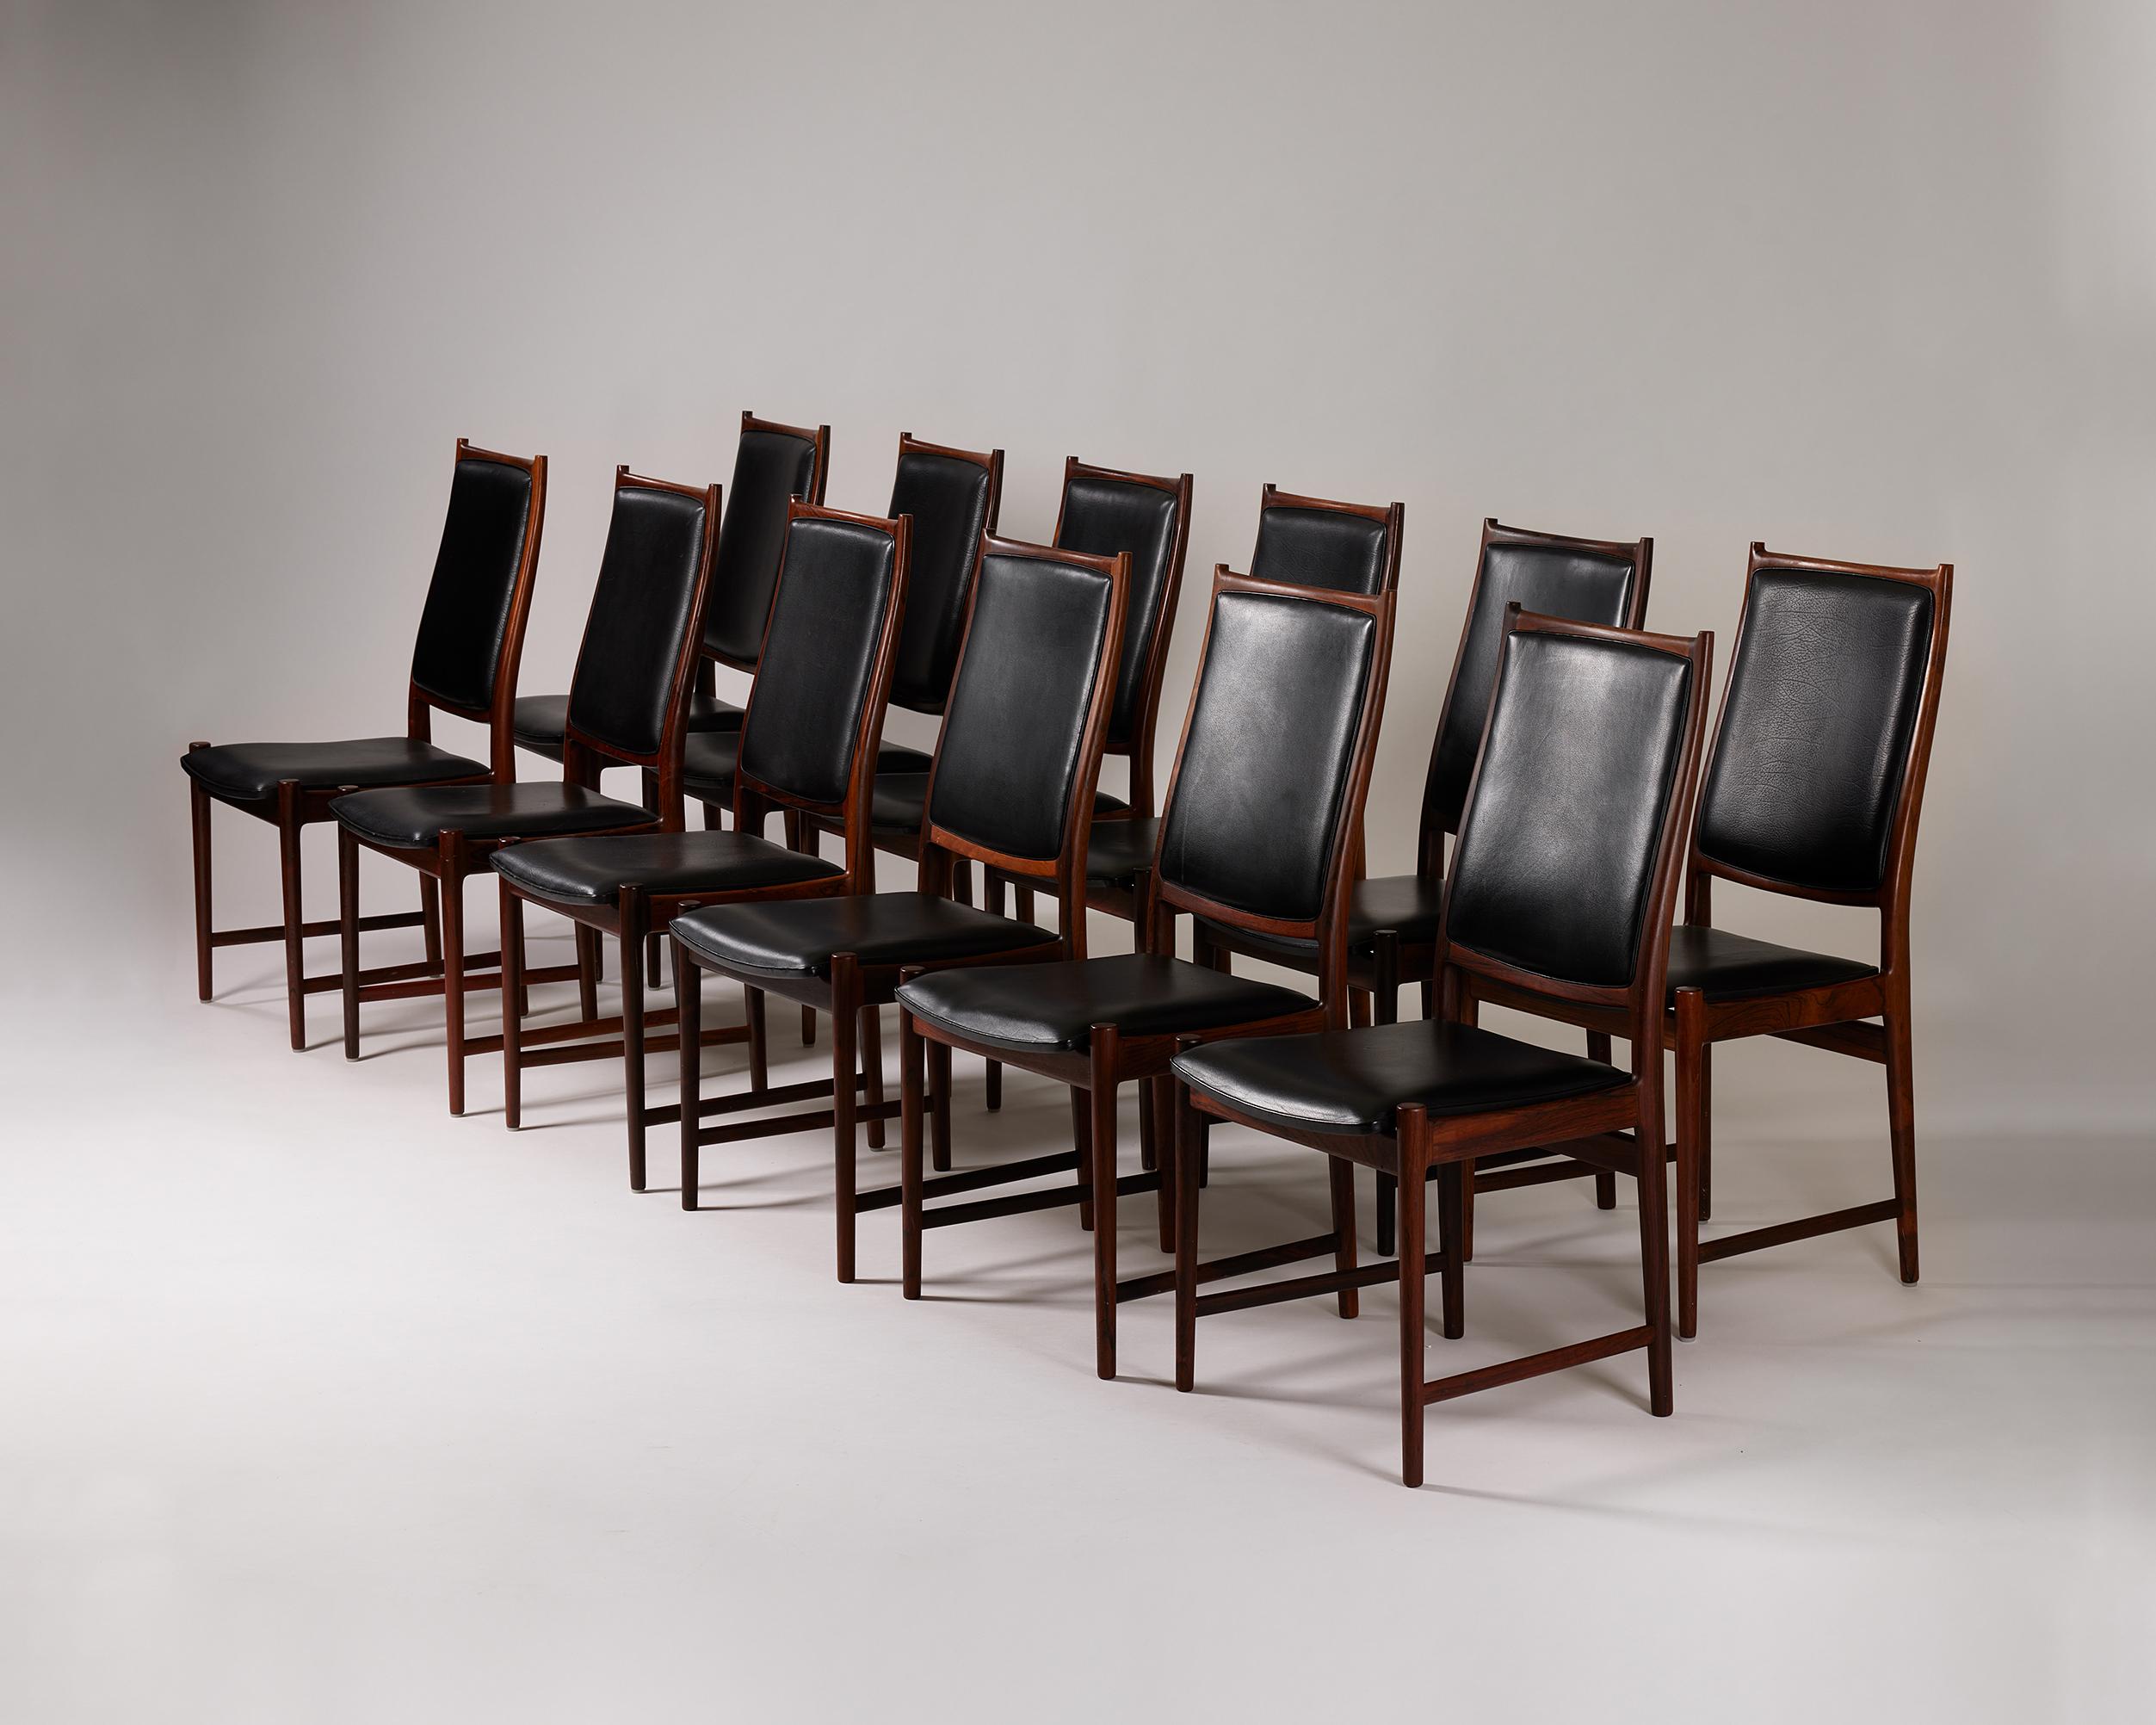 Satz von zwölf Esszimmerstühlen 'Darby', entworfen von Torbjörn Afdal für Bruksbo.
Norwegen, 1960er Jahre.

Palisanderholz und Leder.

Dieser Esszimmerstuhl Modell 'Darby' ist schlicht und doch elegant, mit einer raffinierten hohen Rückenlehne